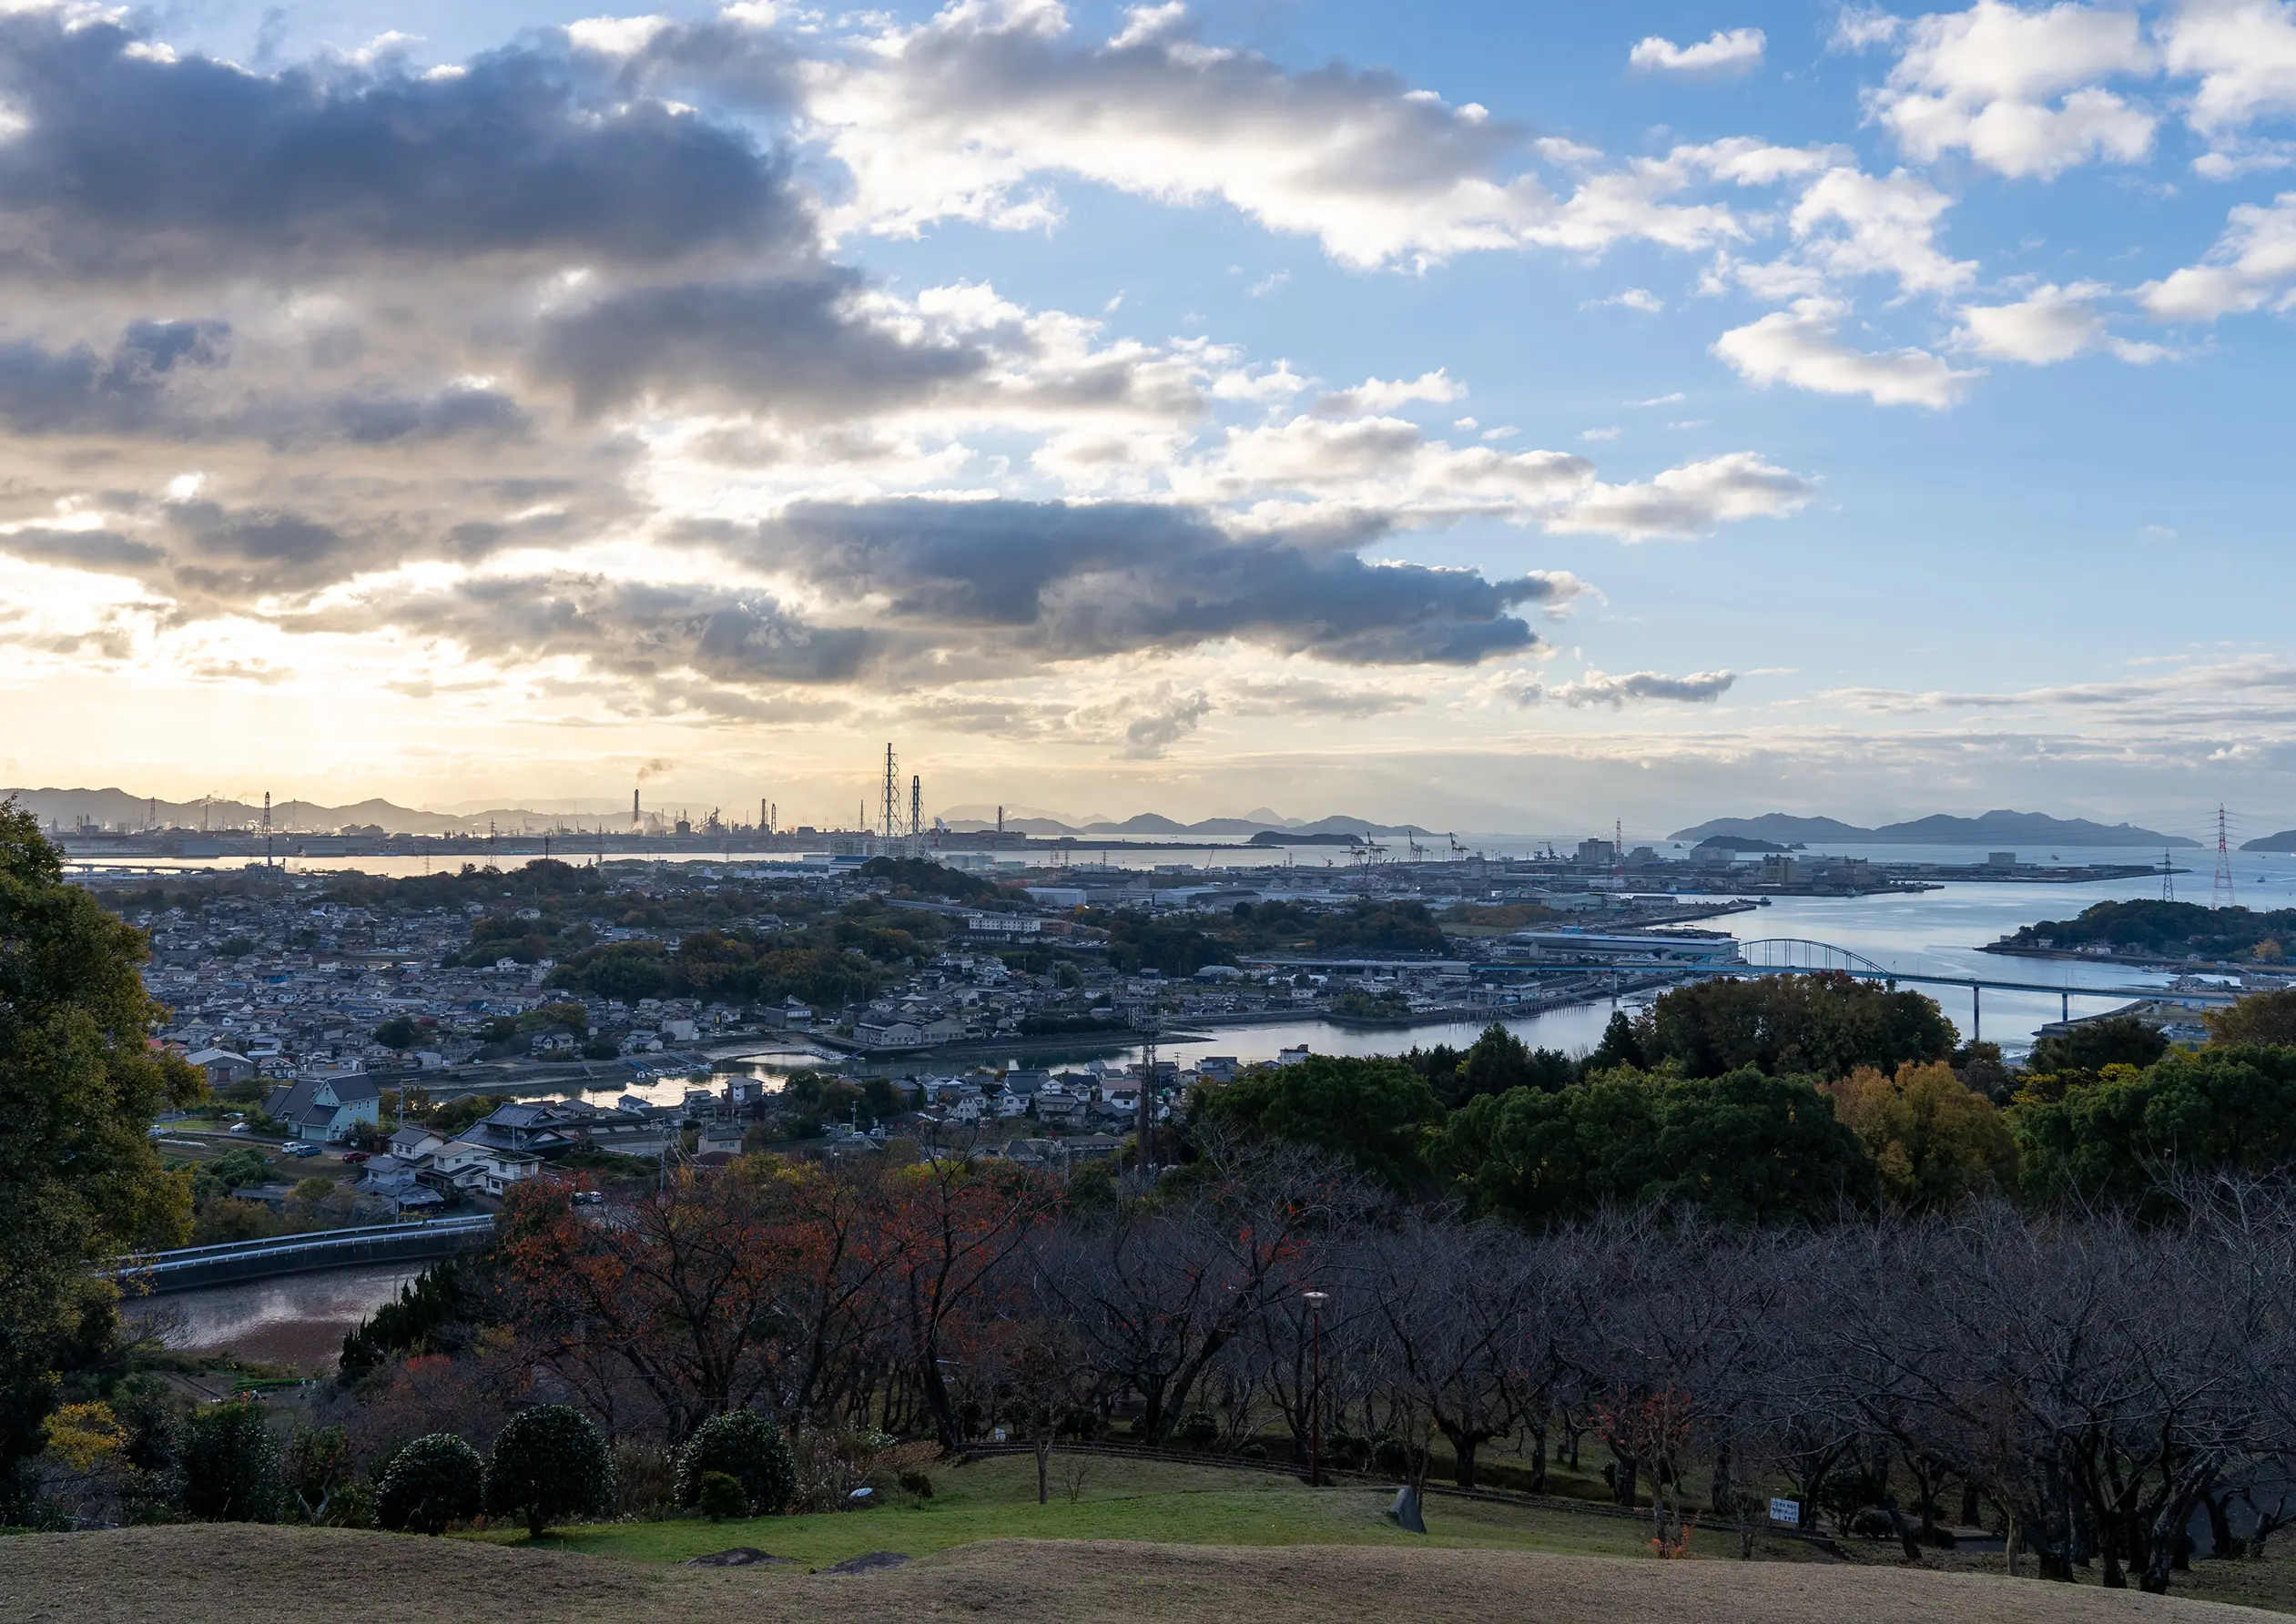 A view of the Seto Inland Sea from Tamashima, Kurashiki, Okayama